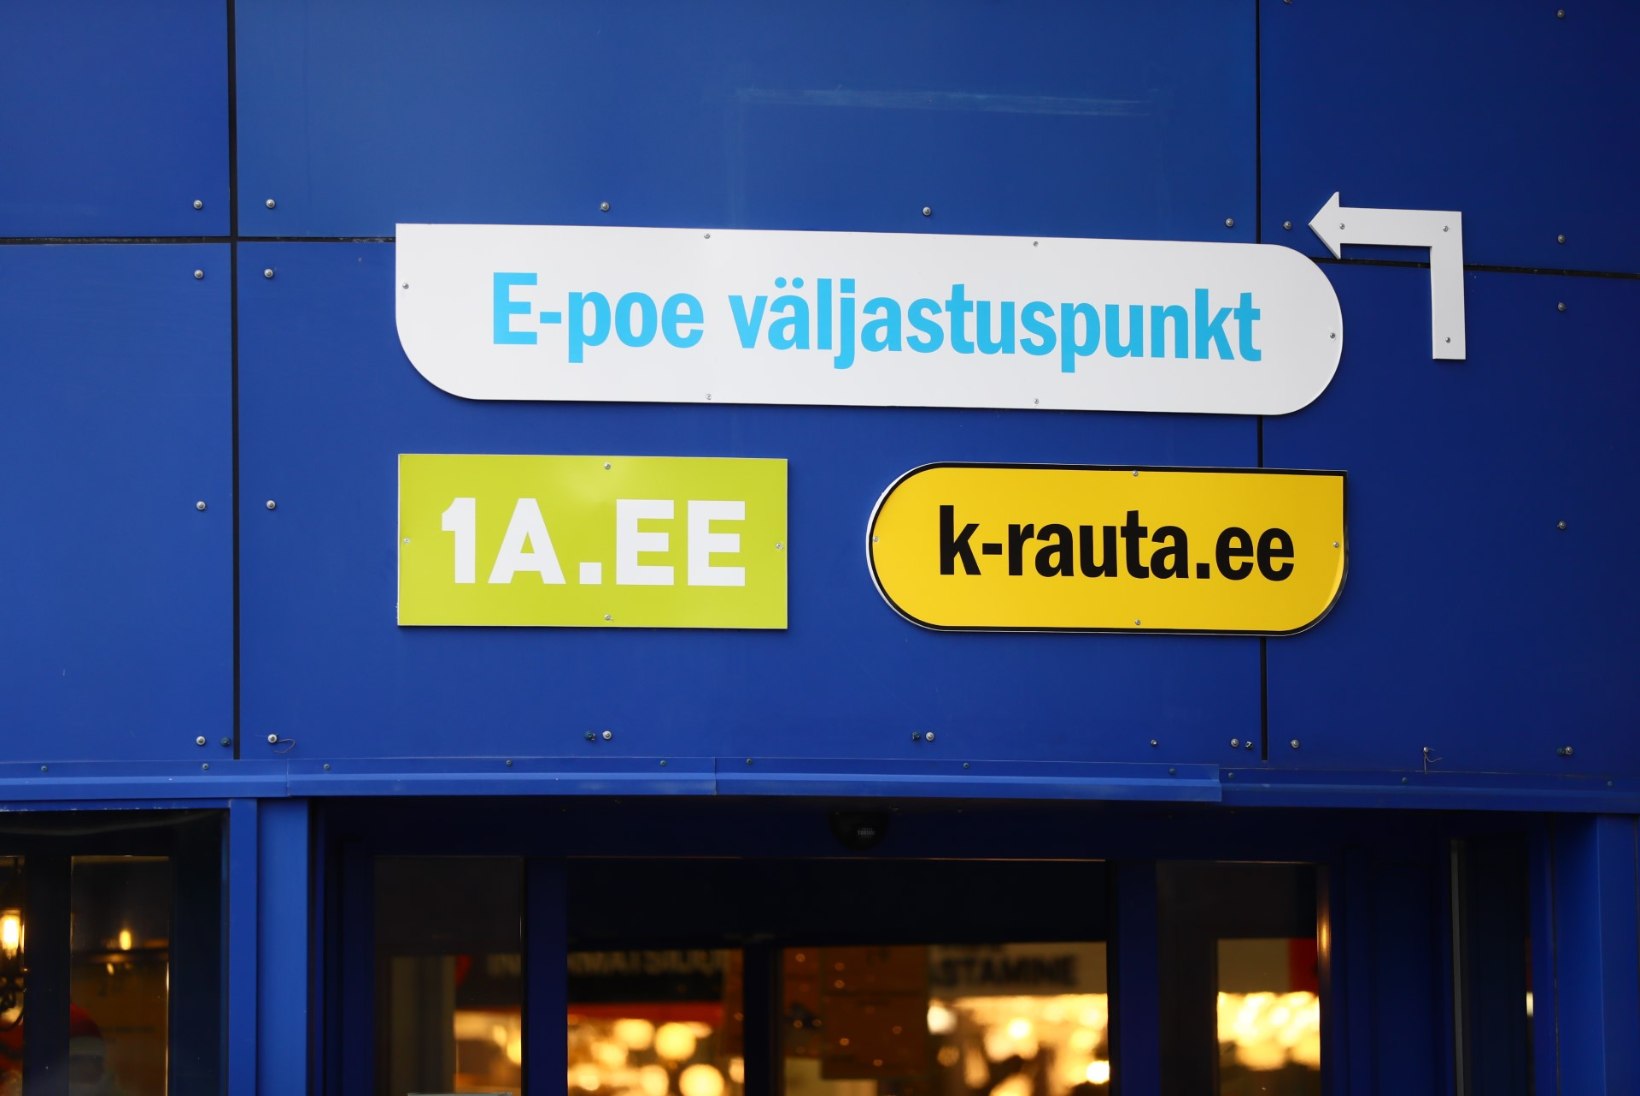 MUSTAL REEDEL PIGISTAME VIIMASE VÄLJA! Sariskeemitaja upitas Eestis „soodushinnad“ kõrgemaks kui tavalised